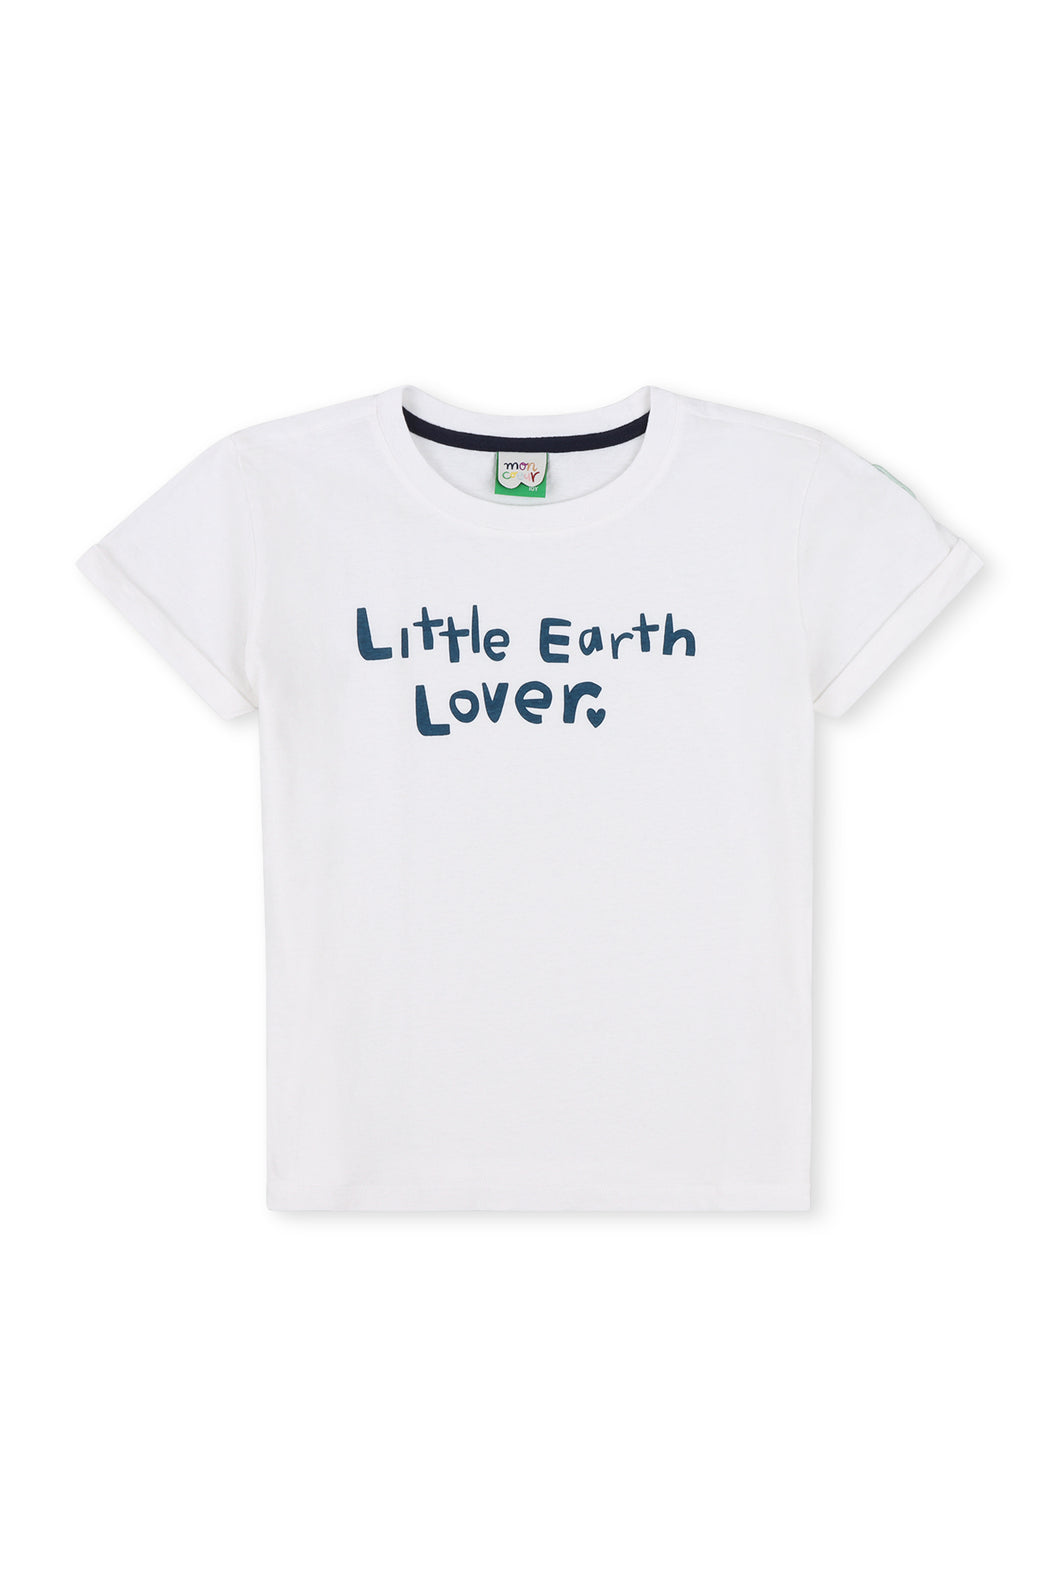 Little Earth Lover Kids Tee